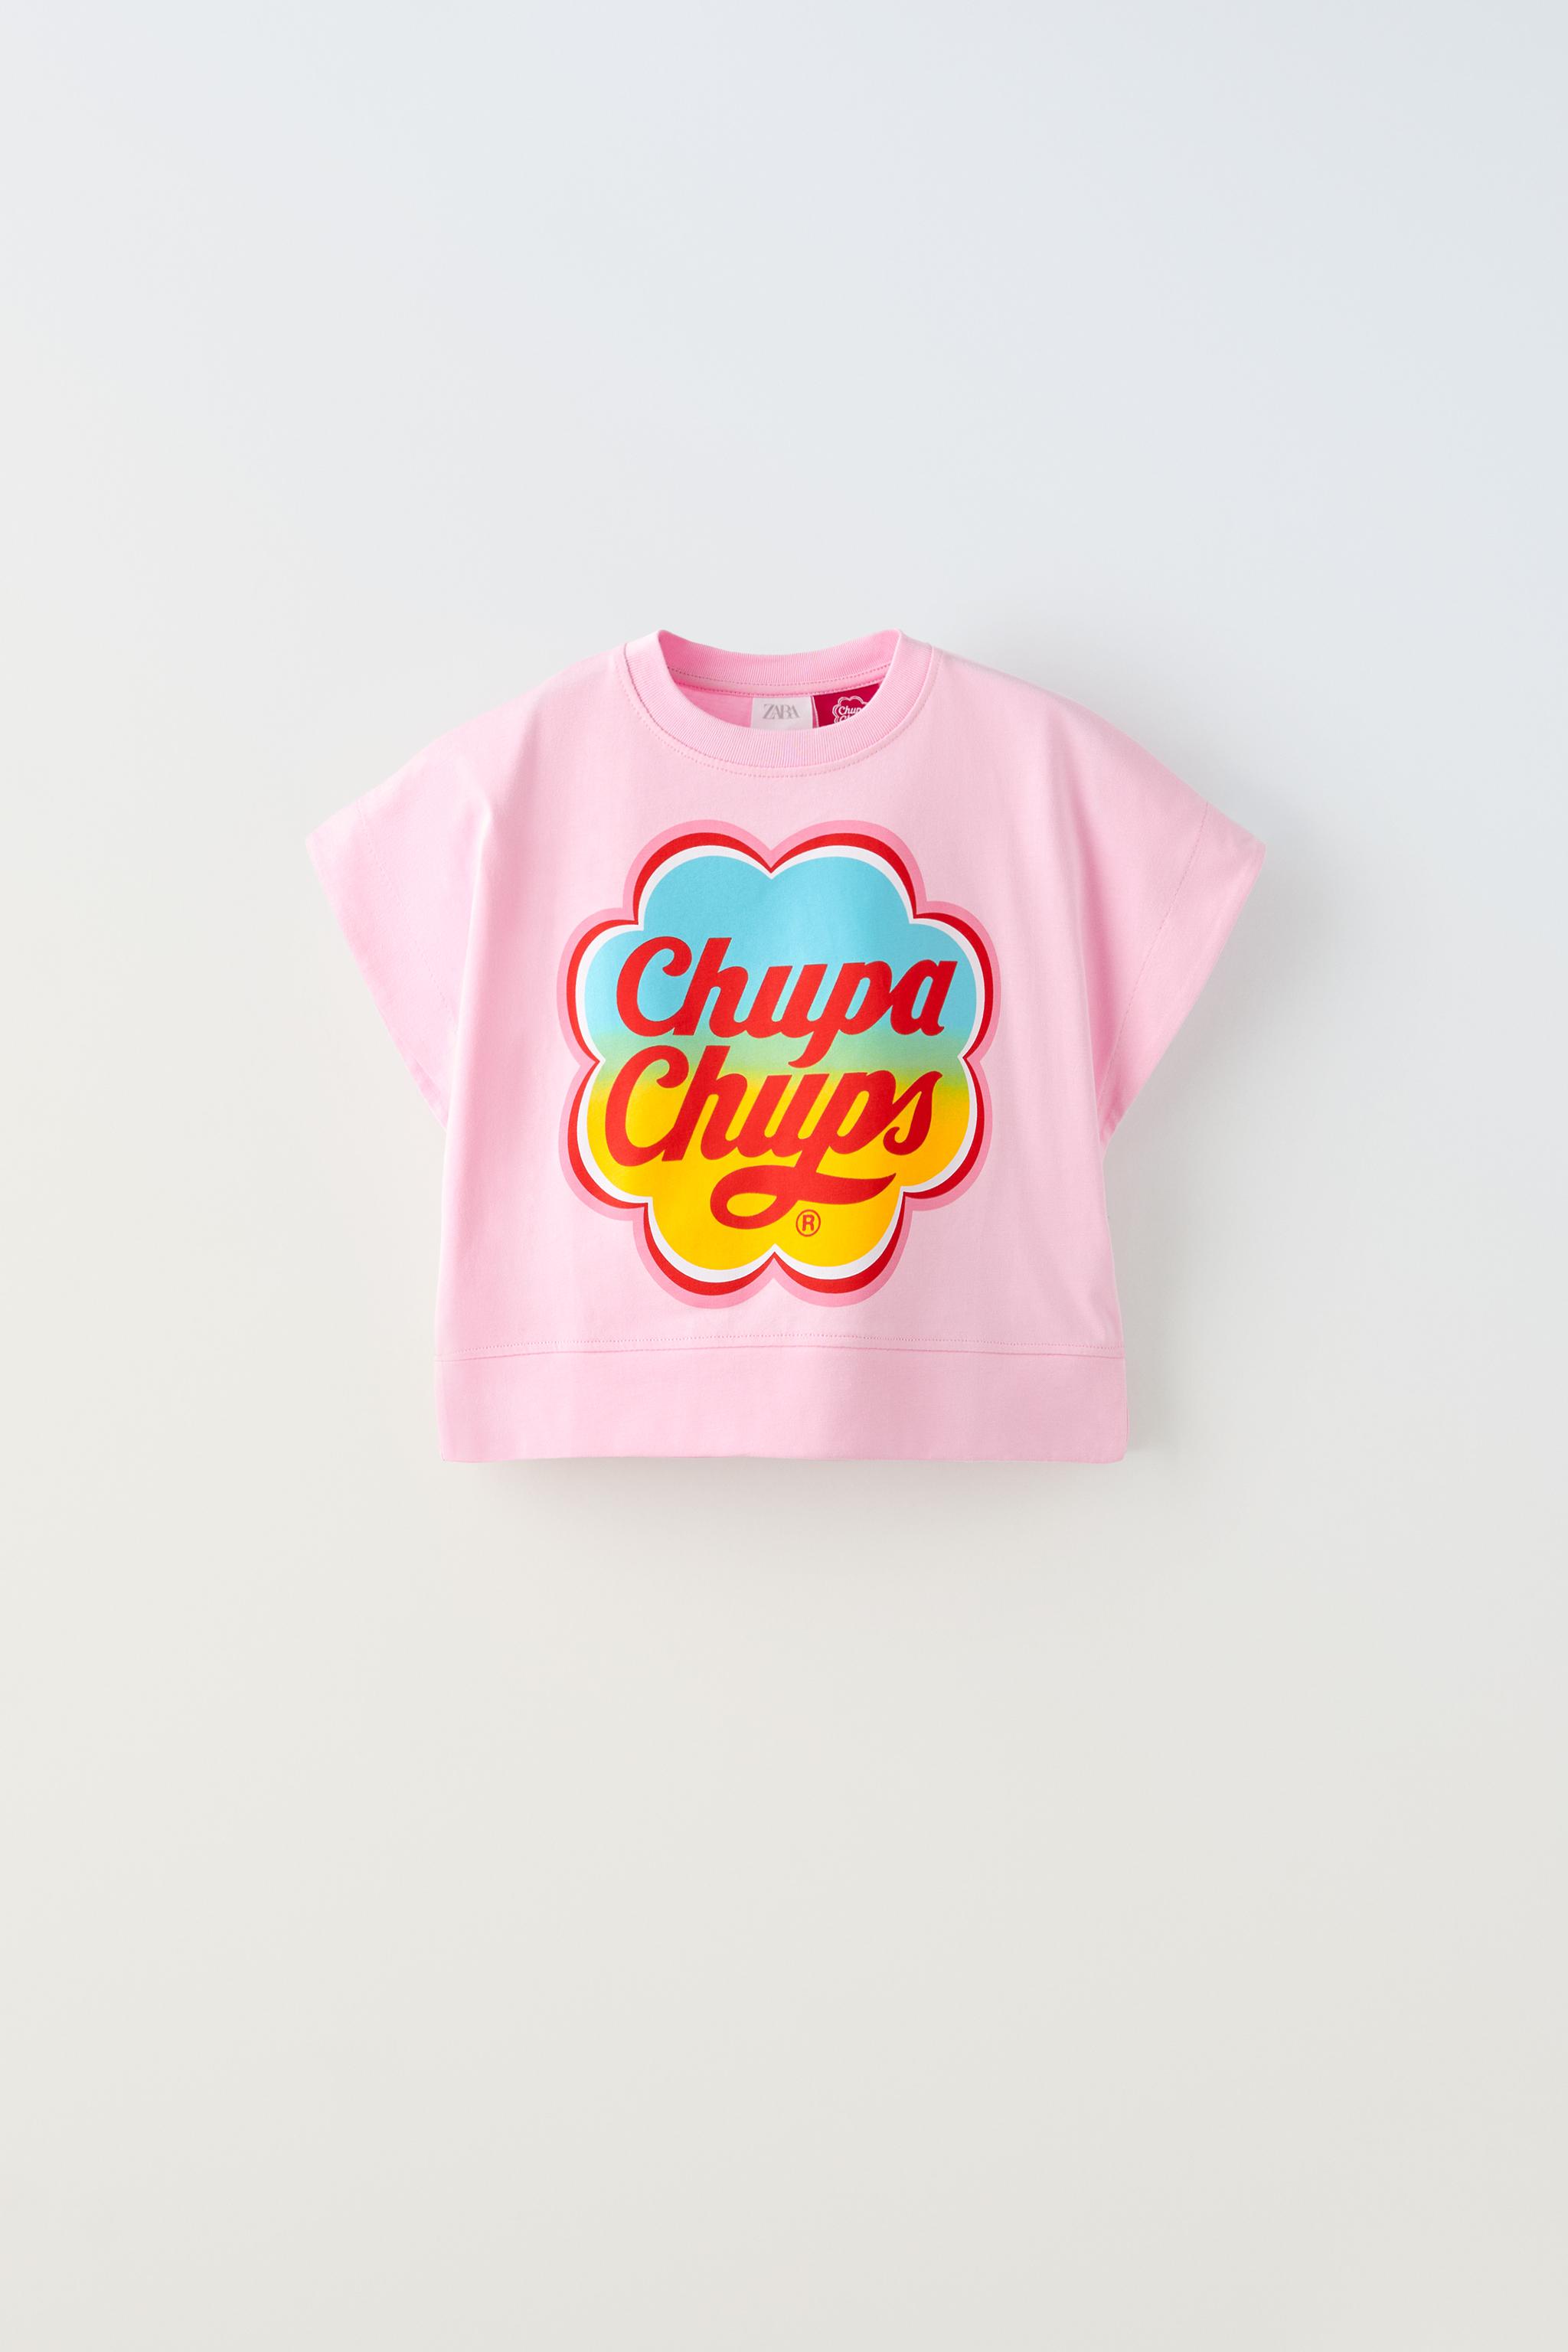 CHUPA CHUPS ® T-SHIRT